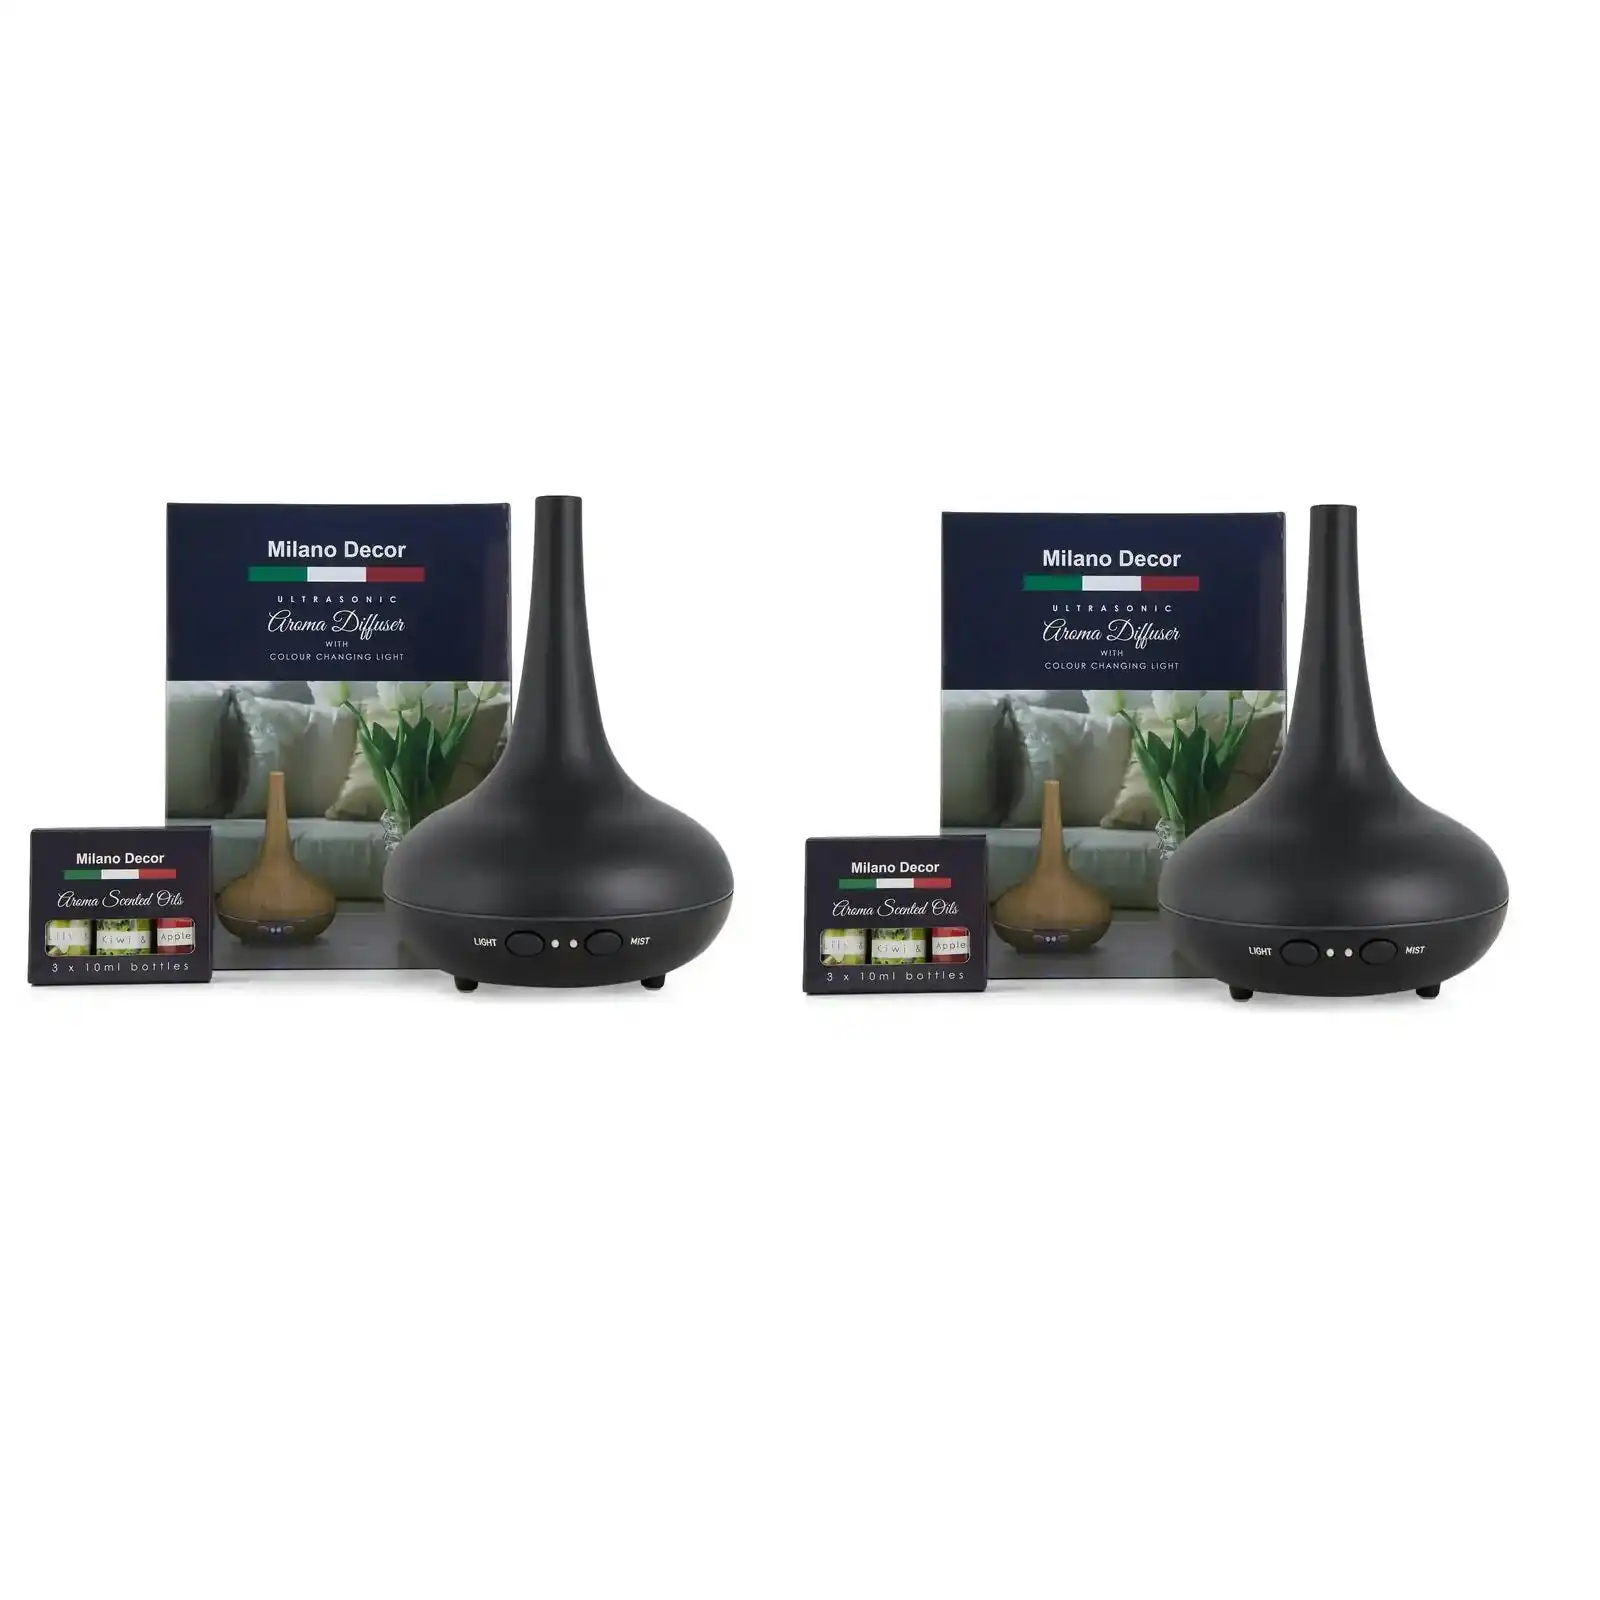 2 x Milano Decor Ultrasonic Aroma Diffusers + 6 Diffuser Oils Complete Set